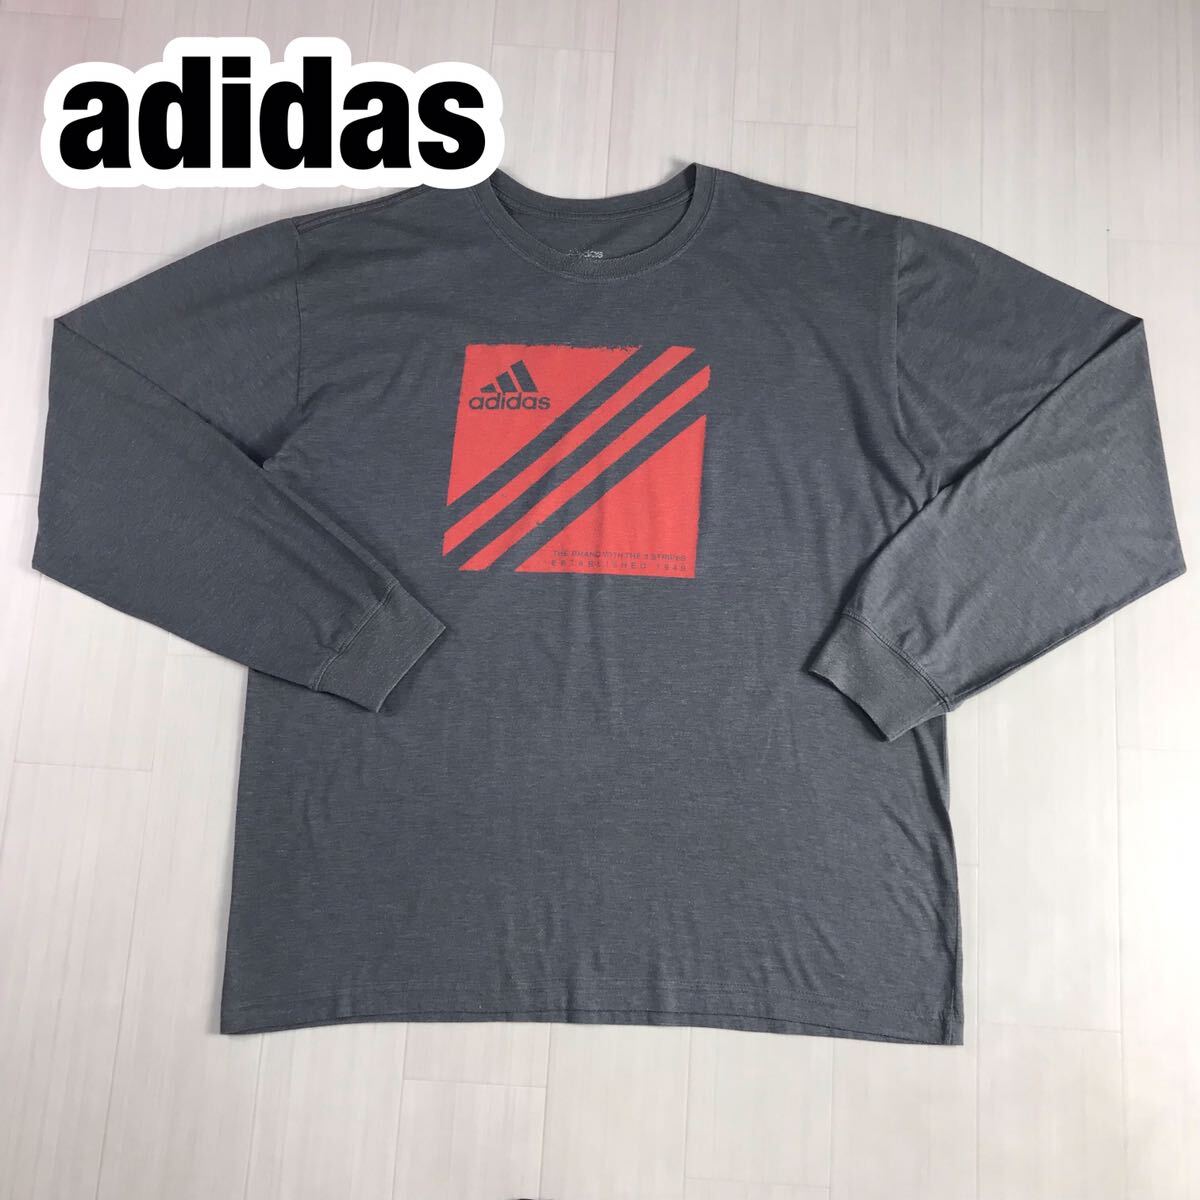 adidas Adidas футболка с длинным рукавом long T принт футболка L серый большой Logo 